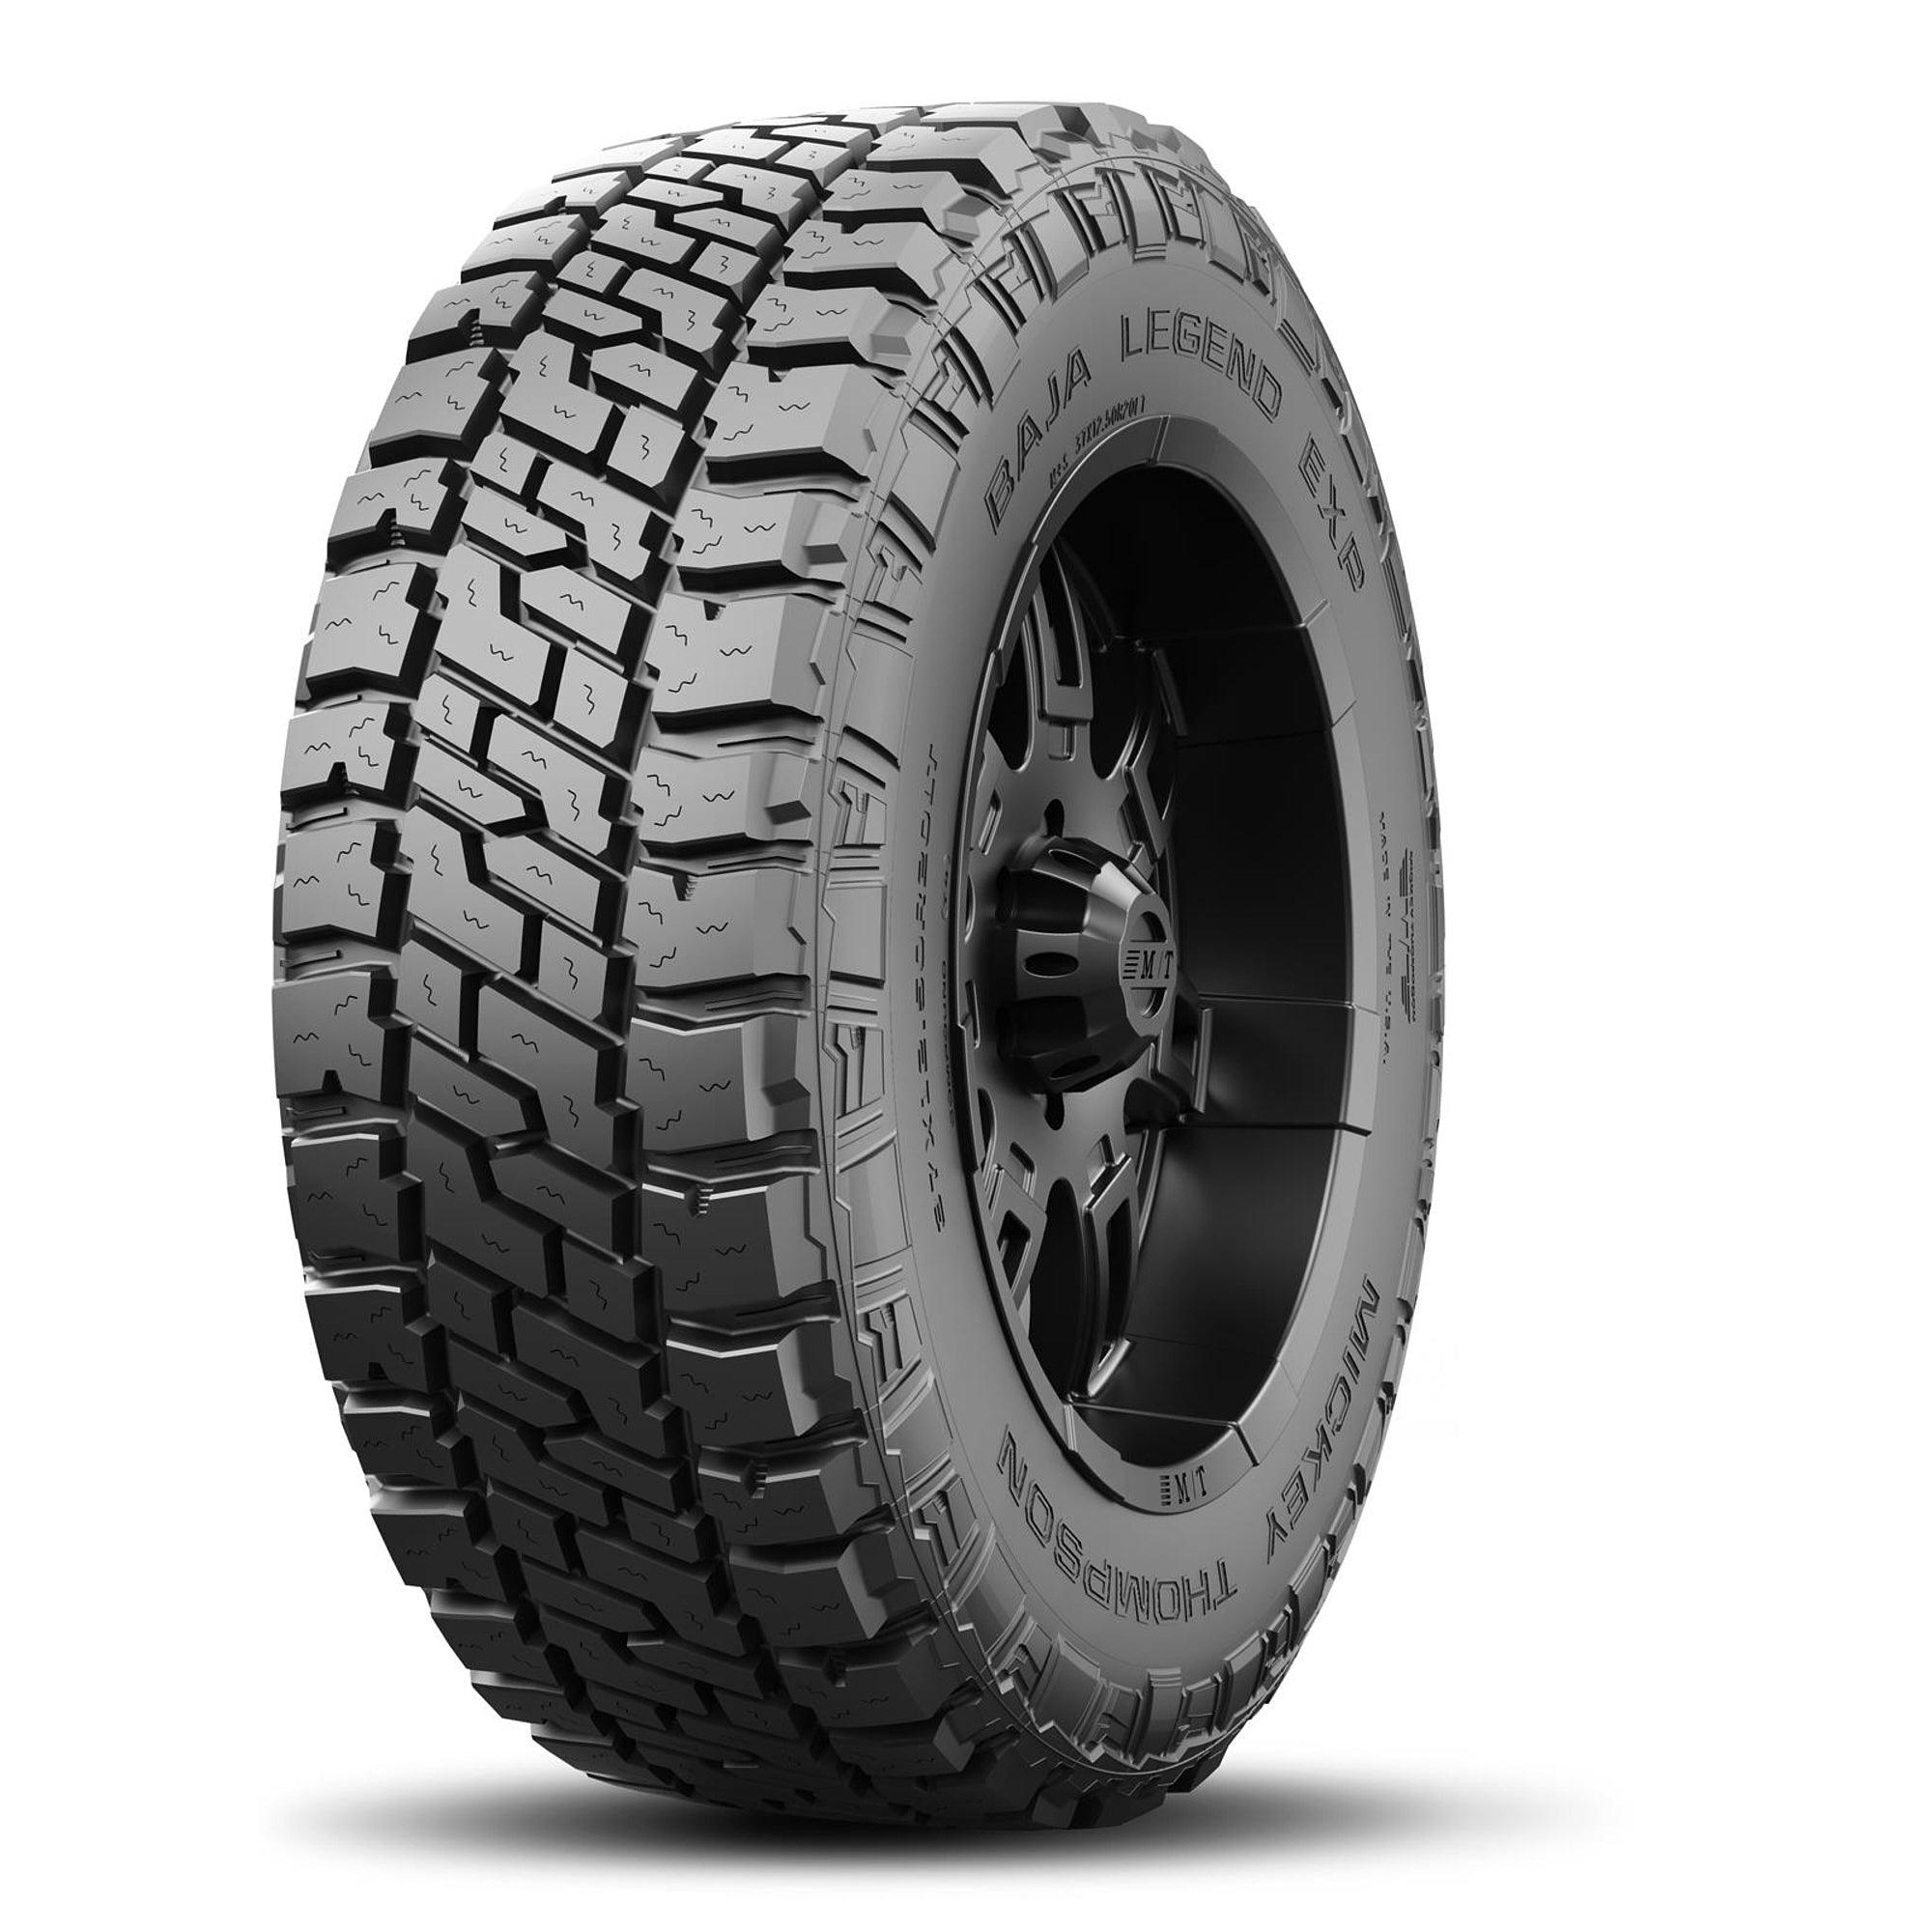 Baja Legend EXP Tire LT275/70R17 121/118Q - Burlile Performance Products